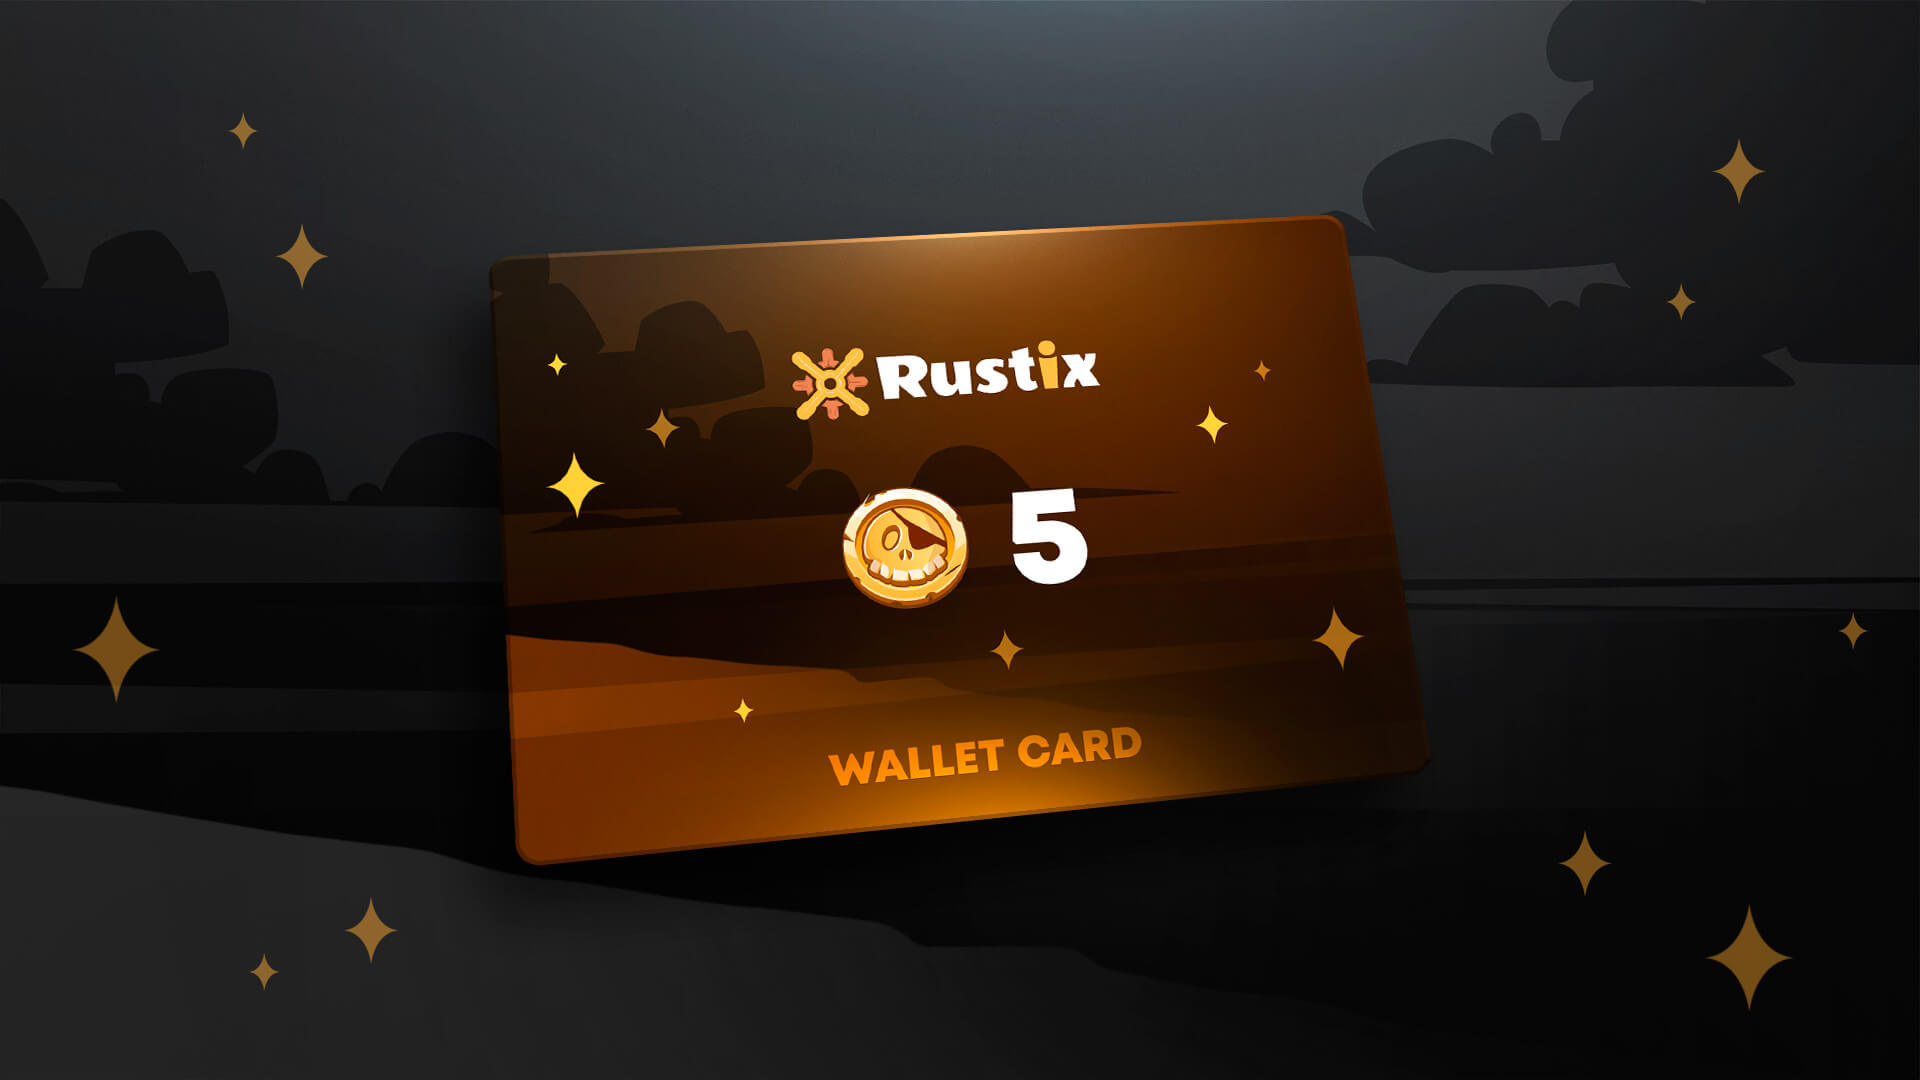 Rustix.io 5 USD Wallet Card Code 5.65 usd